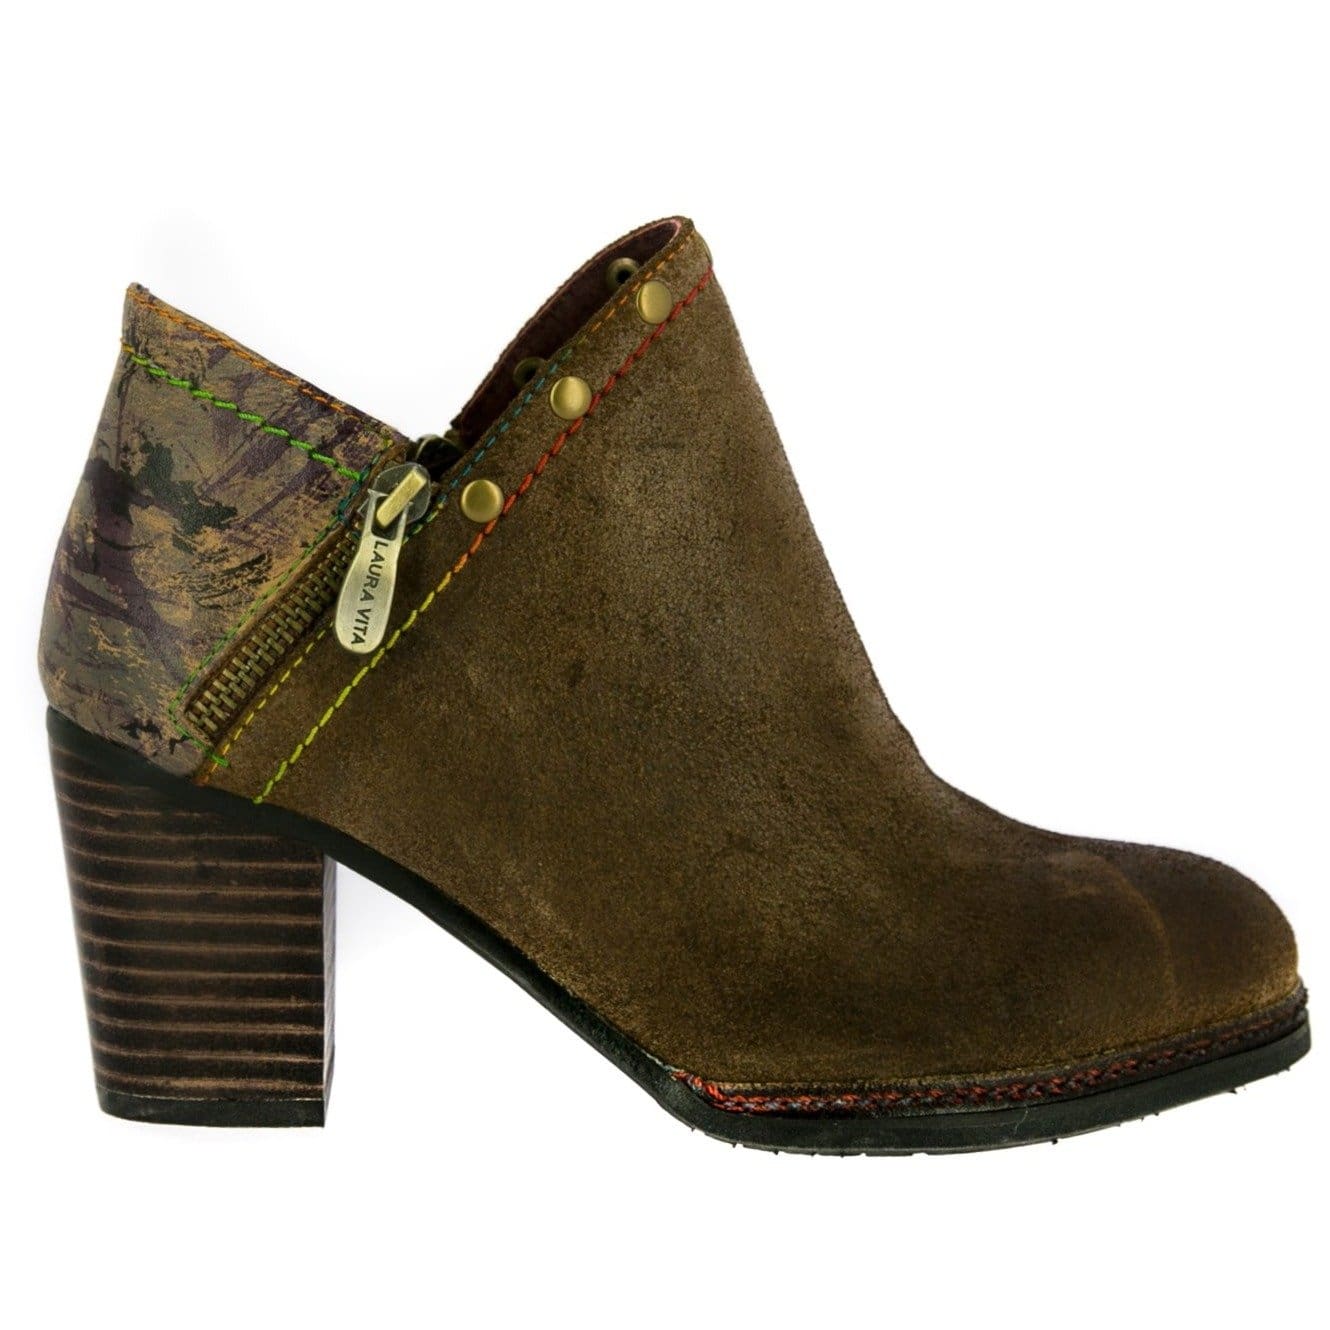 Schuhe CASSIE 33 - 35 / Camel - Stiefelette